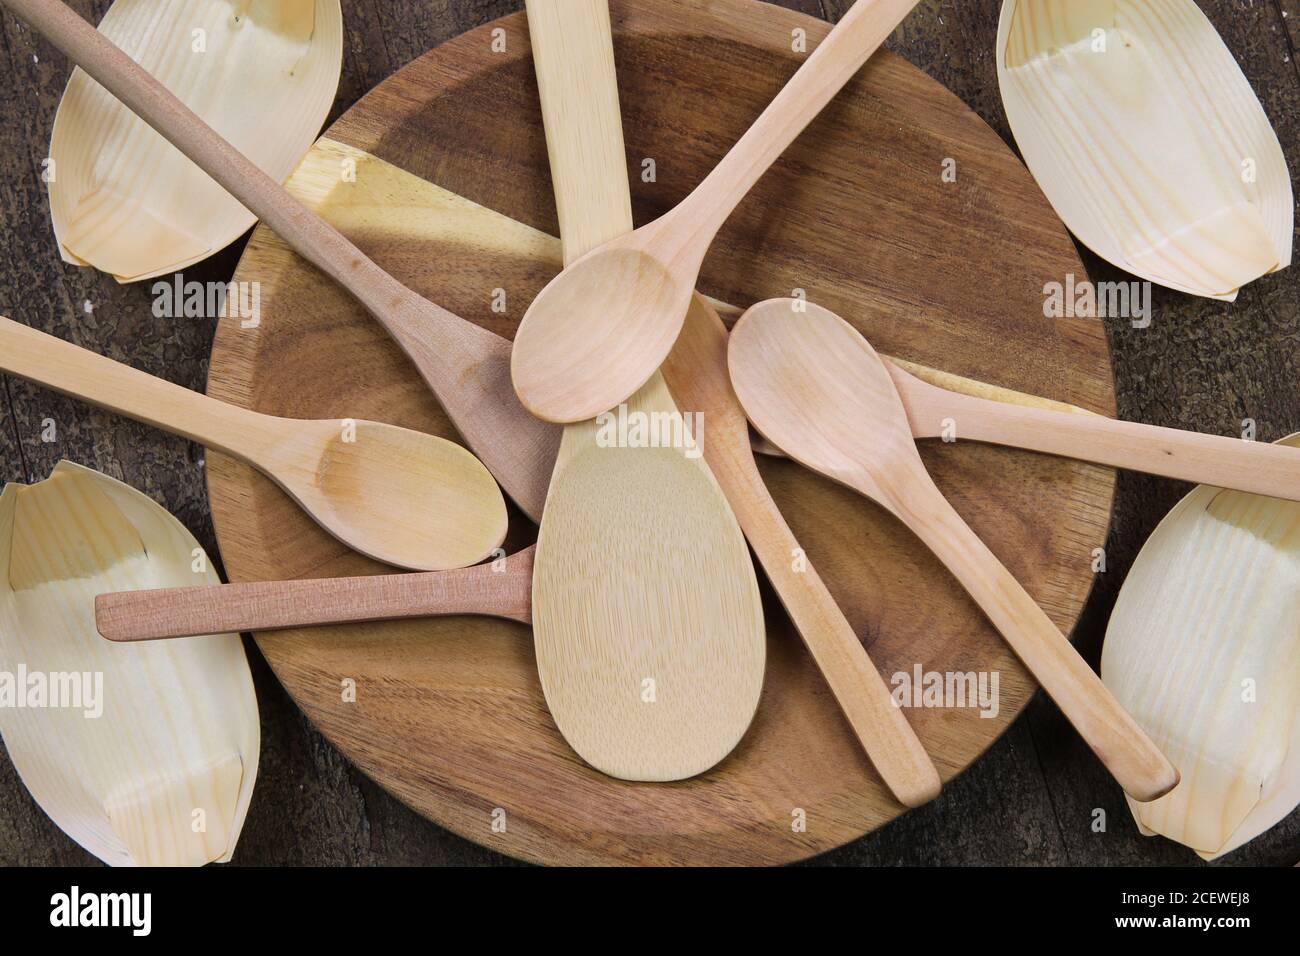 Vue de dessus sur les ustensiles de cuisine en matériaux recyclables : cuillères sur une assiette en bois et bols en papier de bambou Banque D'Images